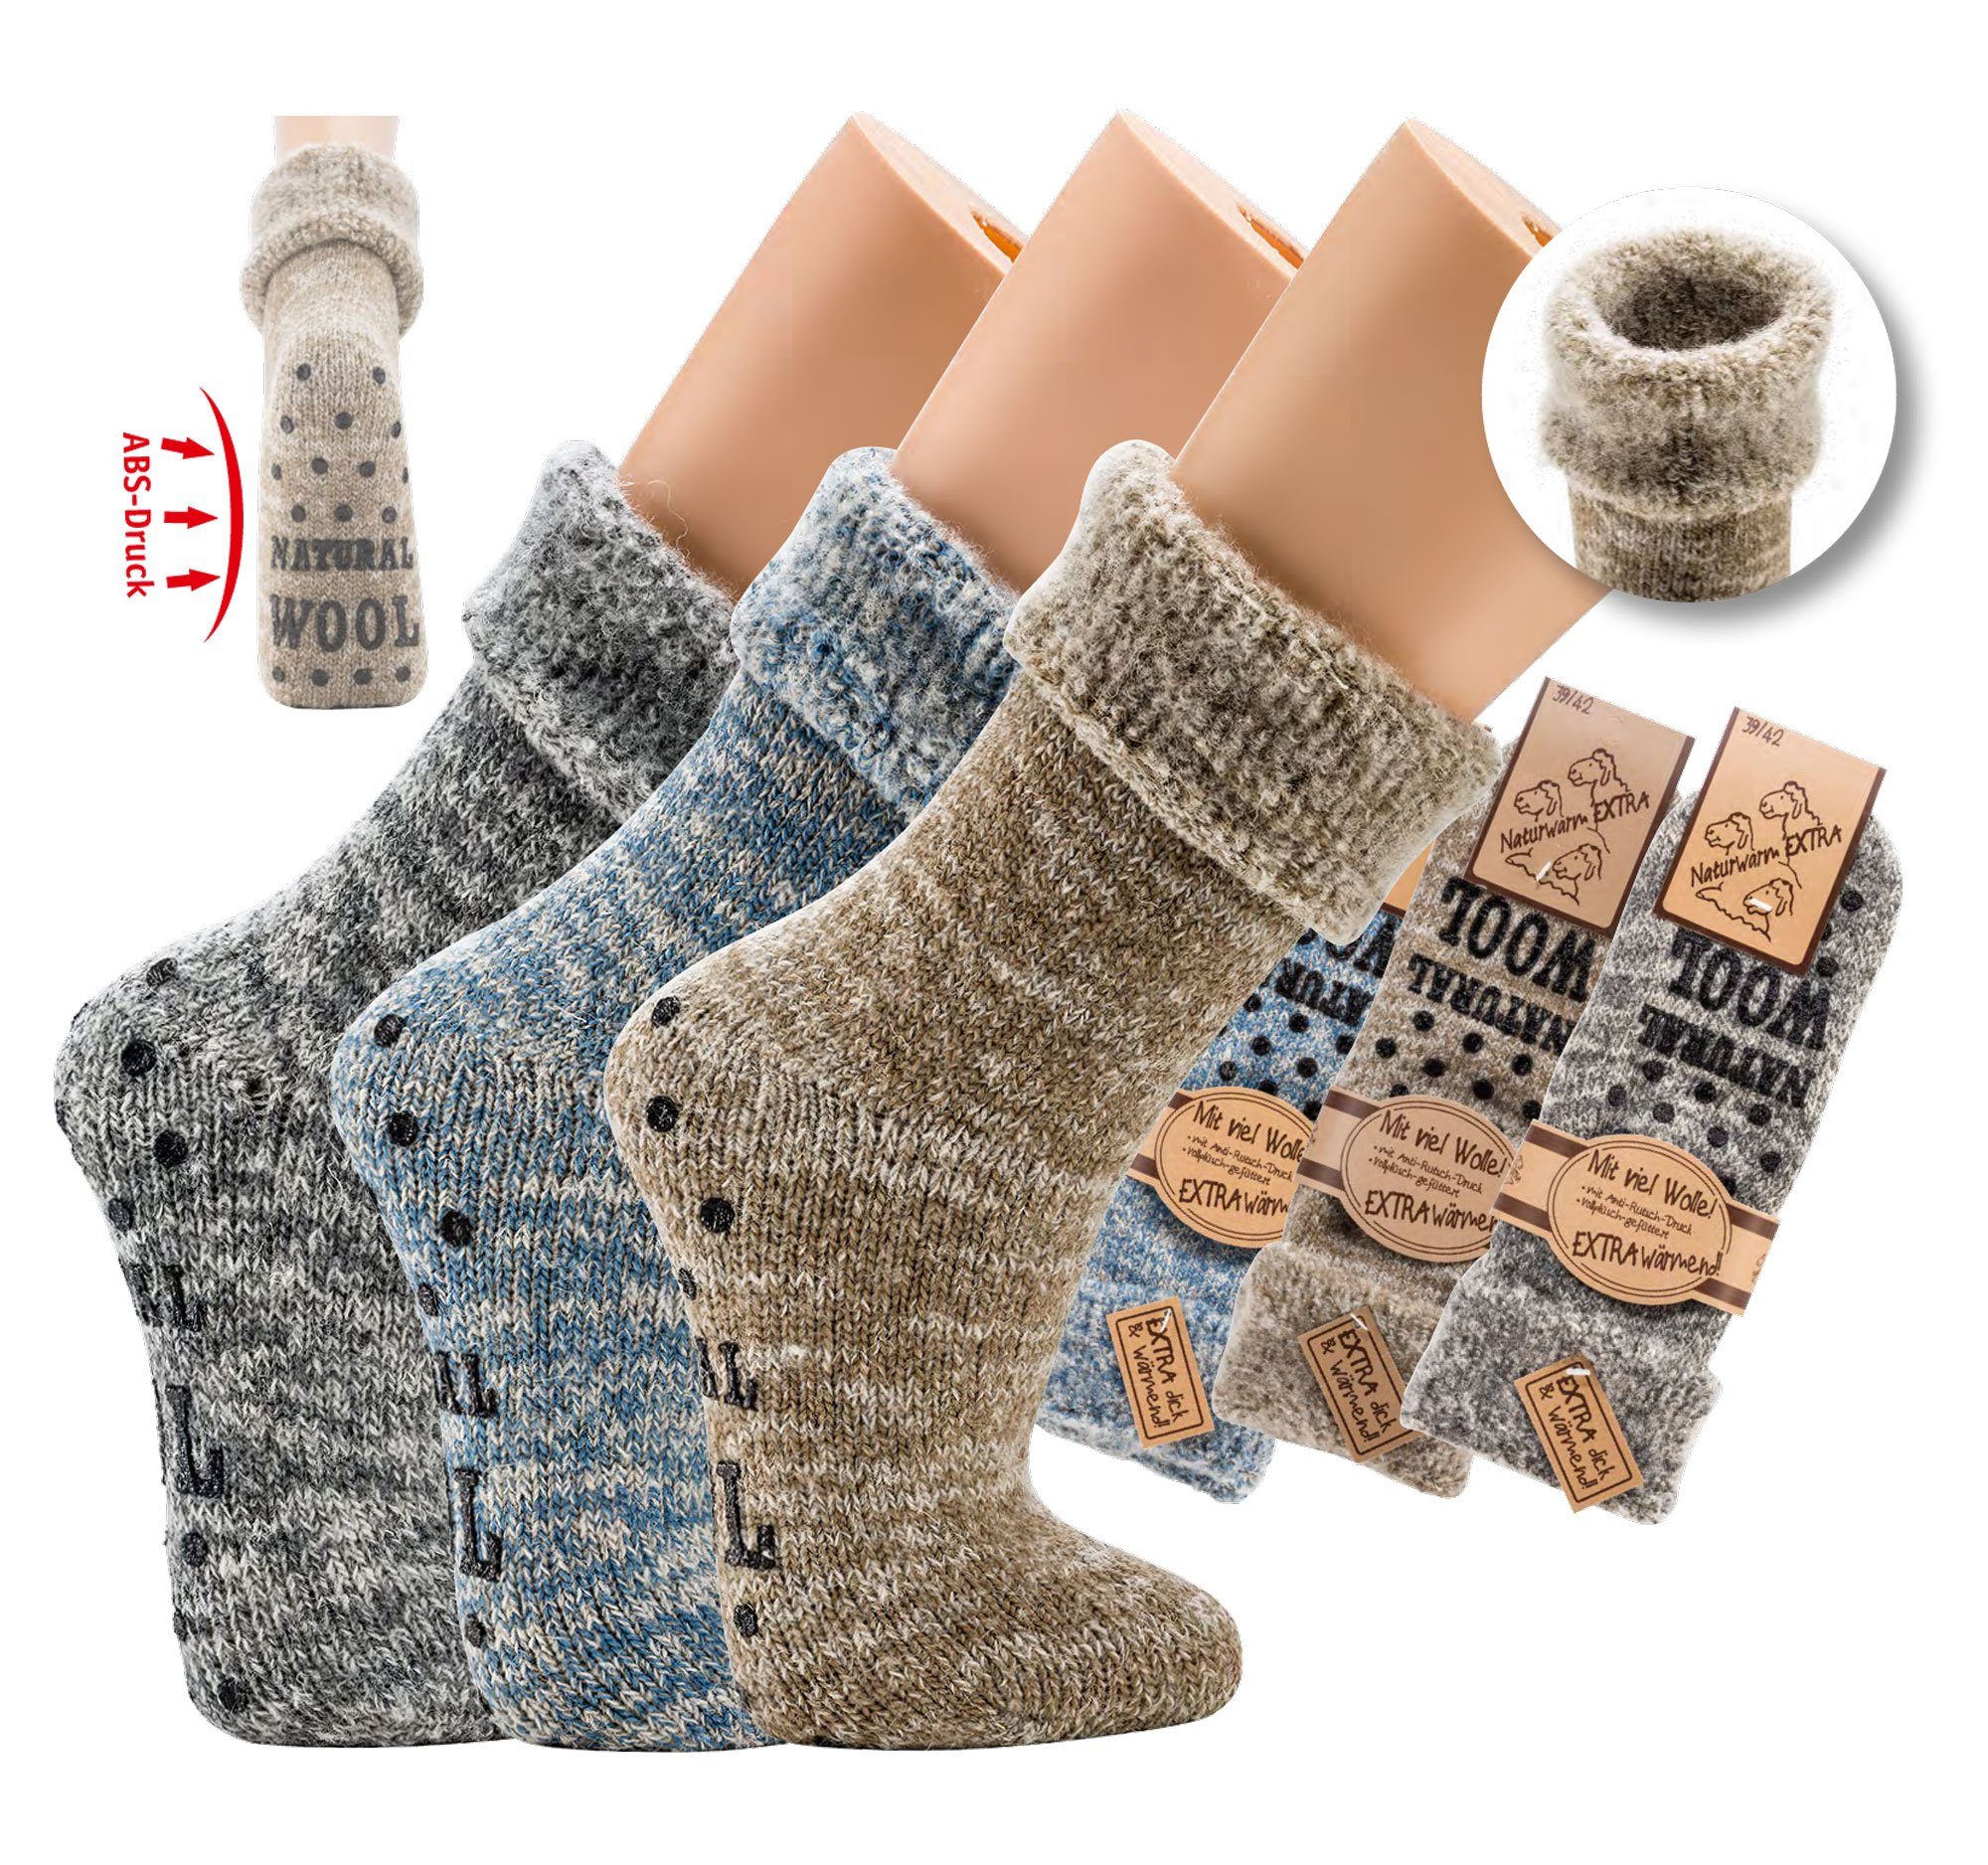 Wowerat Socks 4 Fun ABS-Socken Flauschige Thermo Wollsocken mit ABS Druck für Herren und Frauen (Paar, 1-Paar, 1 Paar) mit ABS-Sohle blaumelange